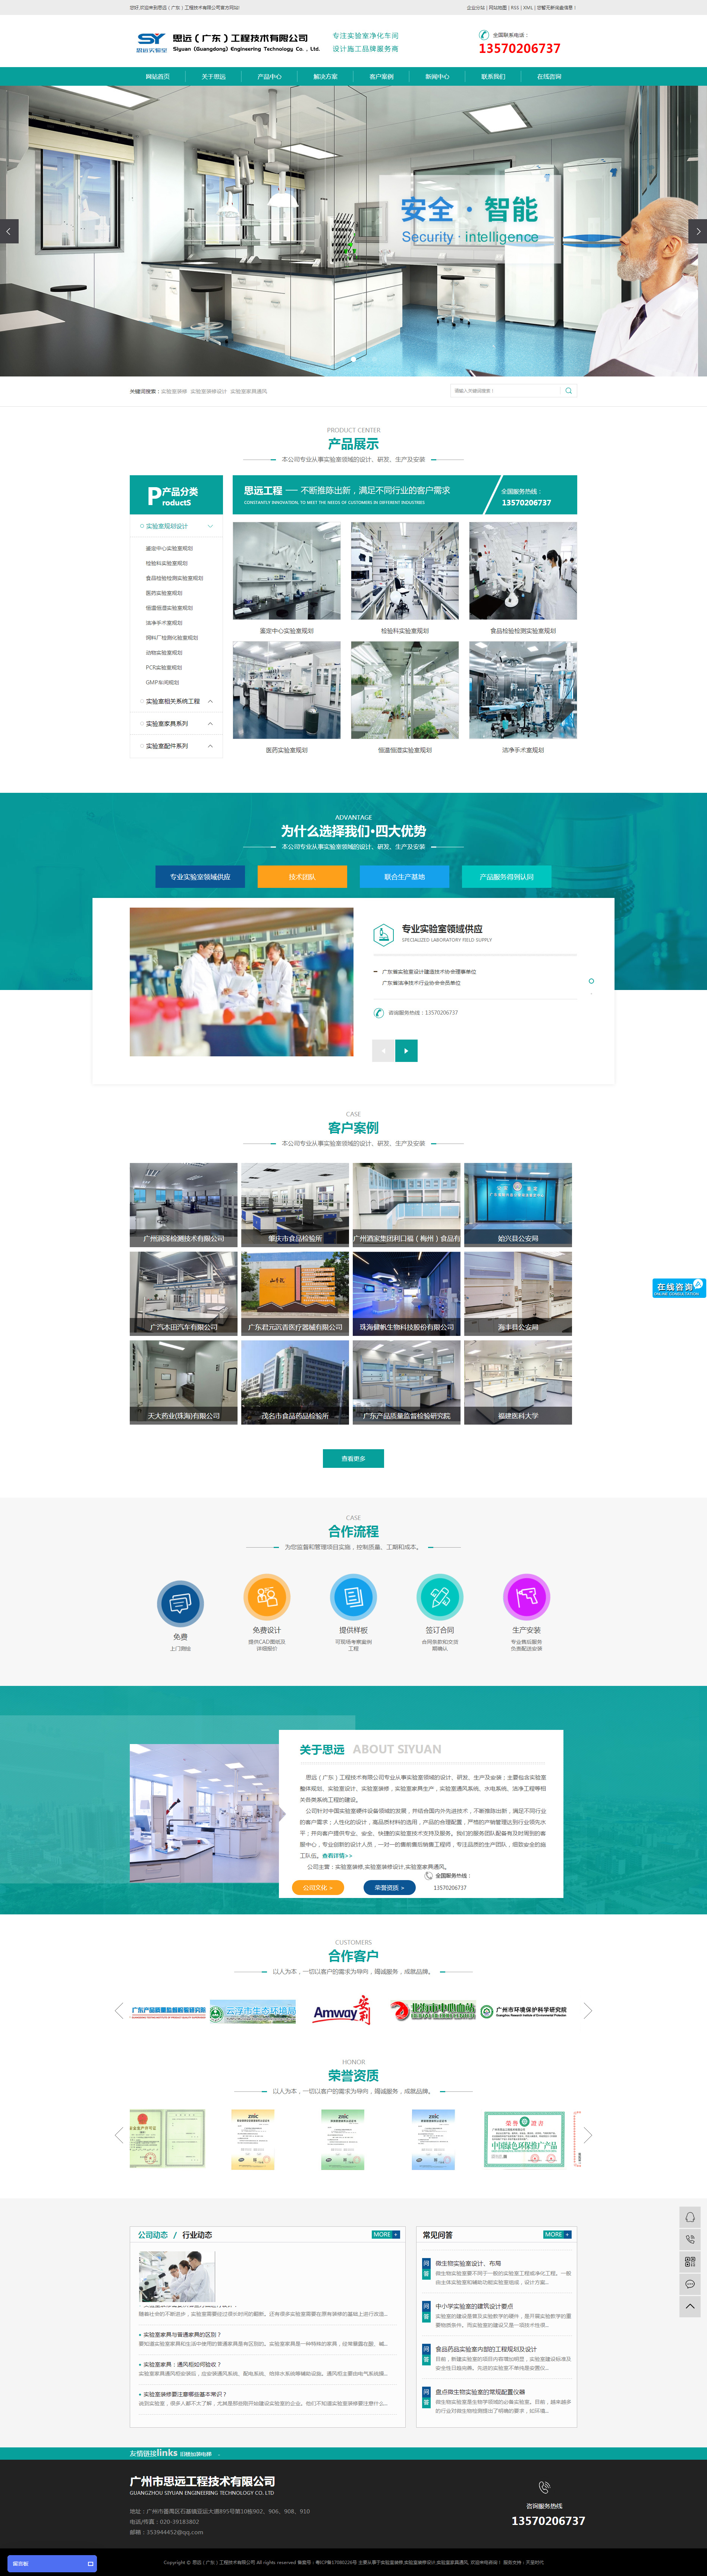 广东思远工程技术网站设计效果图